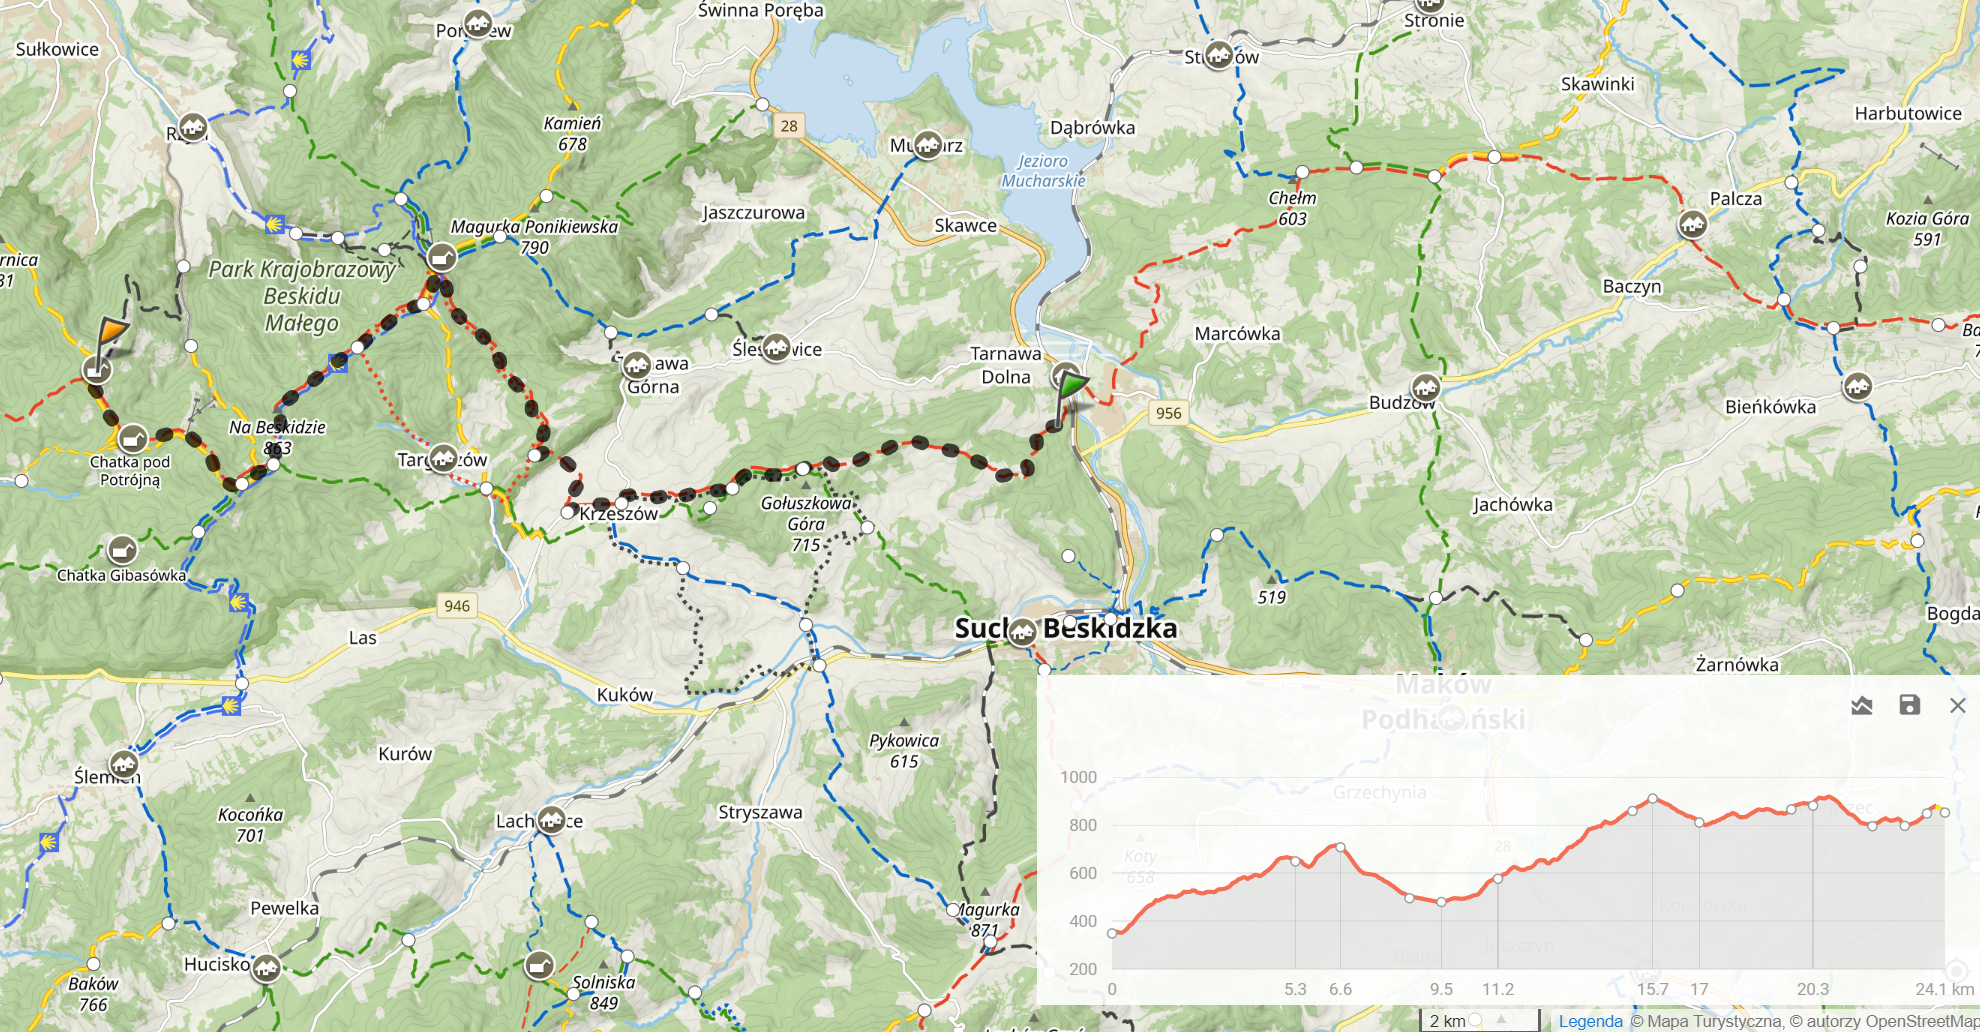 Mały Szlak Beskidzki - dzień 4. 24,1km i 1164m sumy podejść.